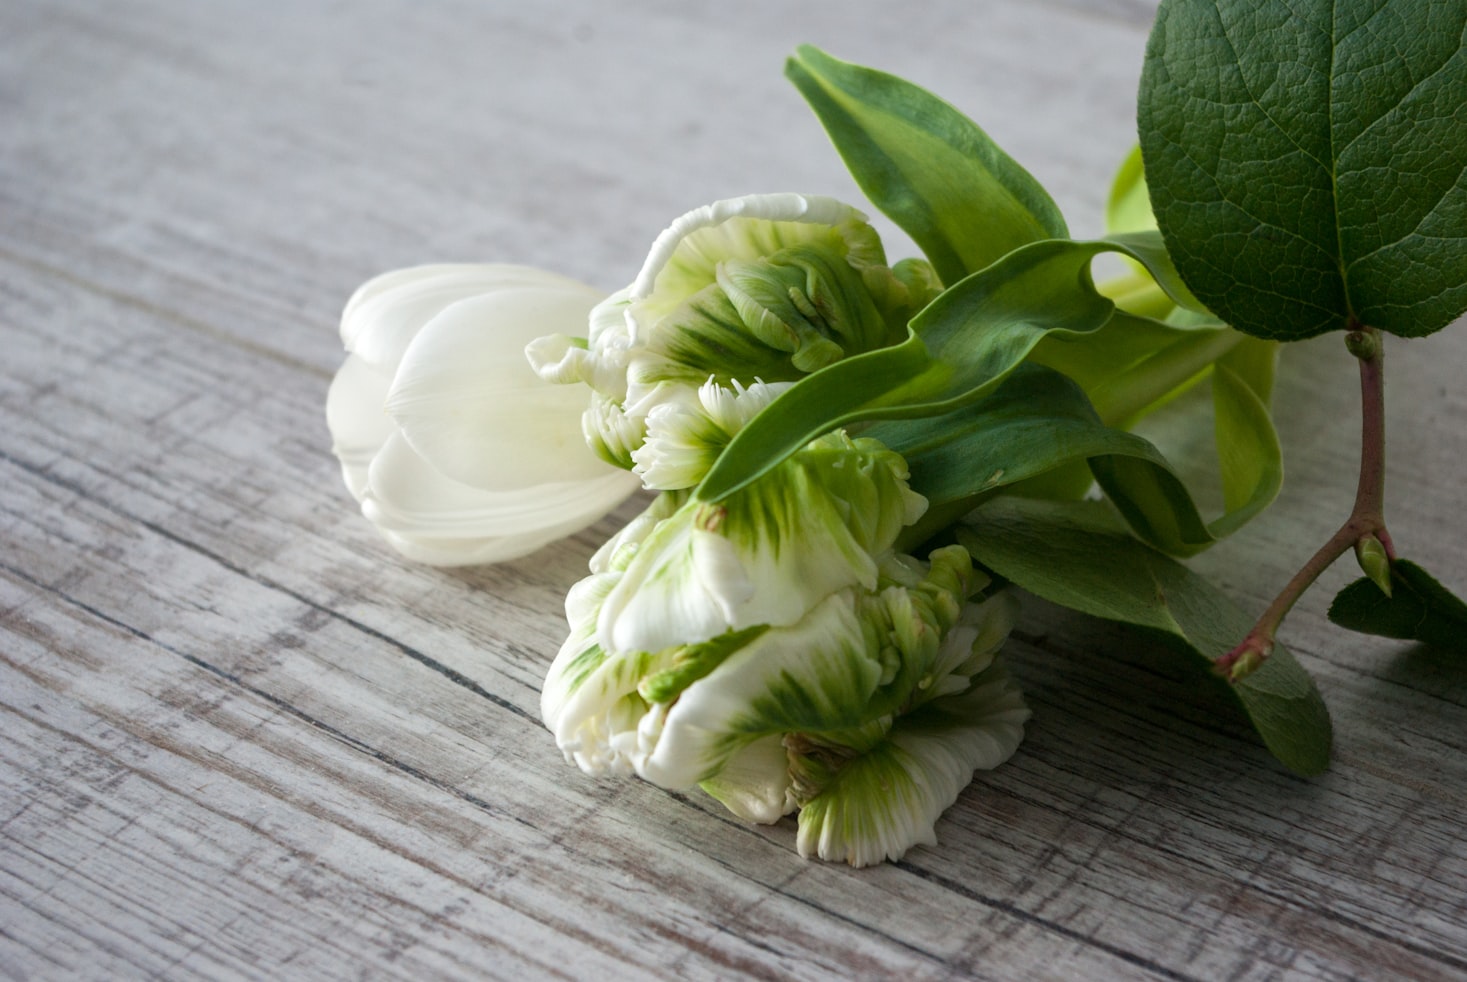 Personaliza tu ramo de tulipanes online| Envía tulipanes Parrot a domicilio